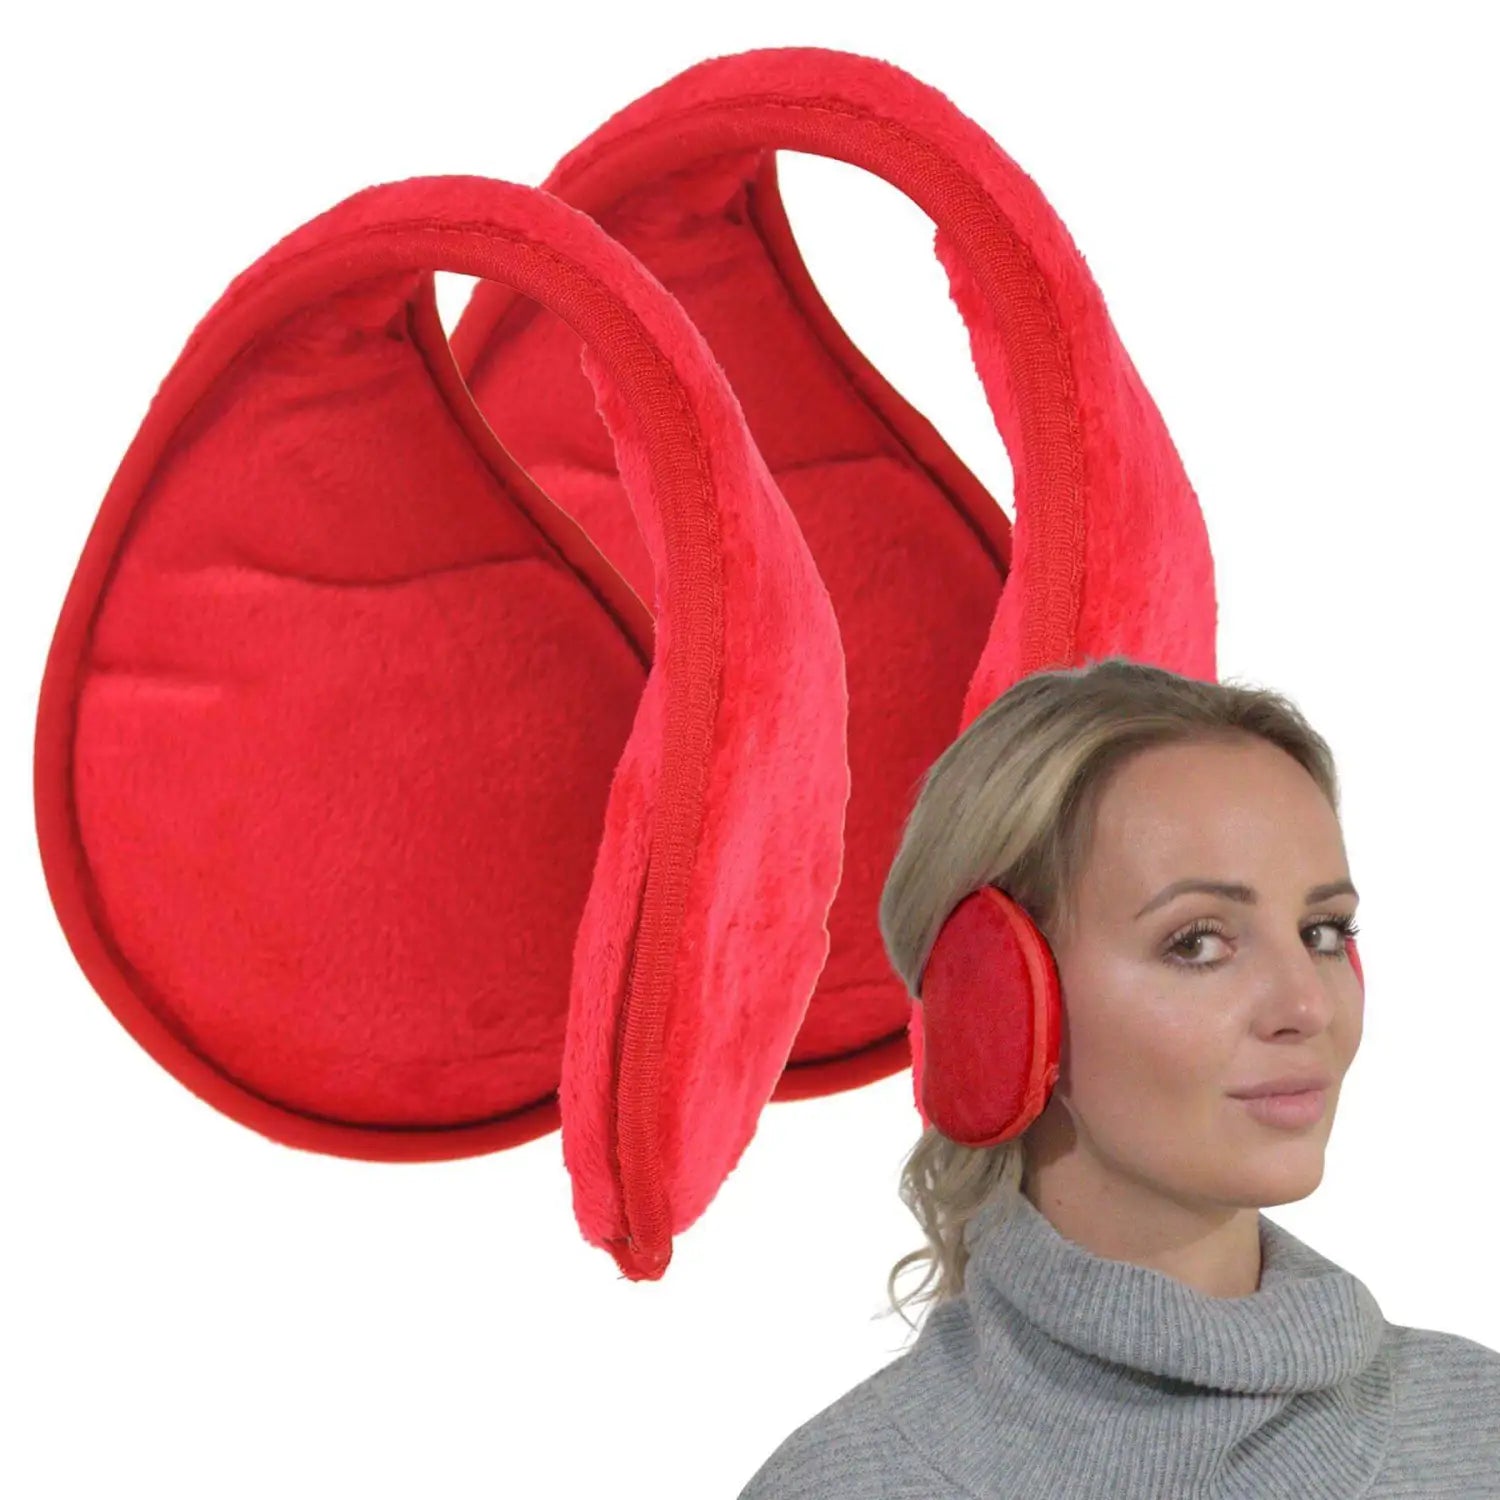 Extra Wide Winter Ear Muffs for Women - Soft Fleece Red Ear Warmer